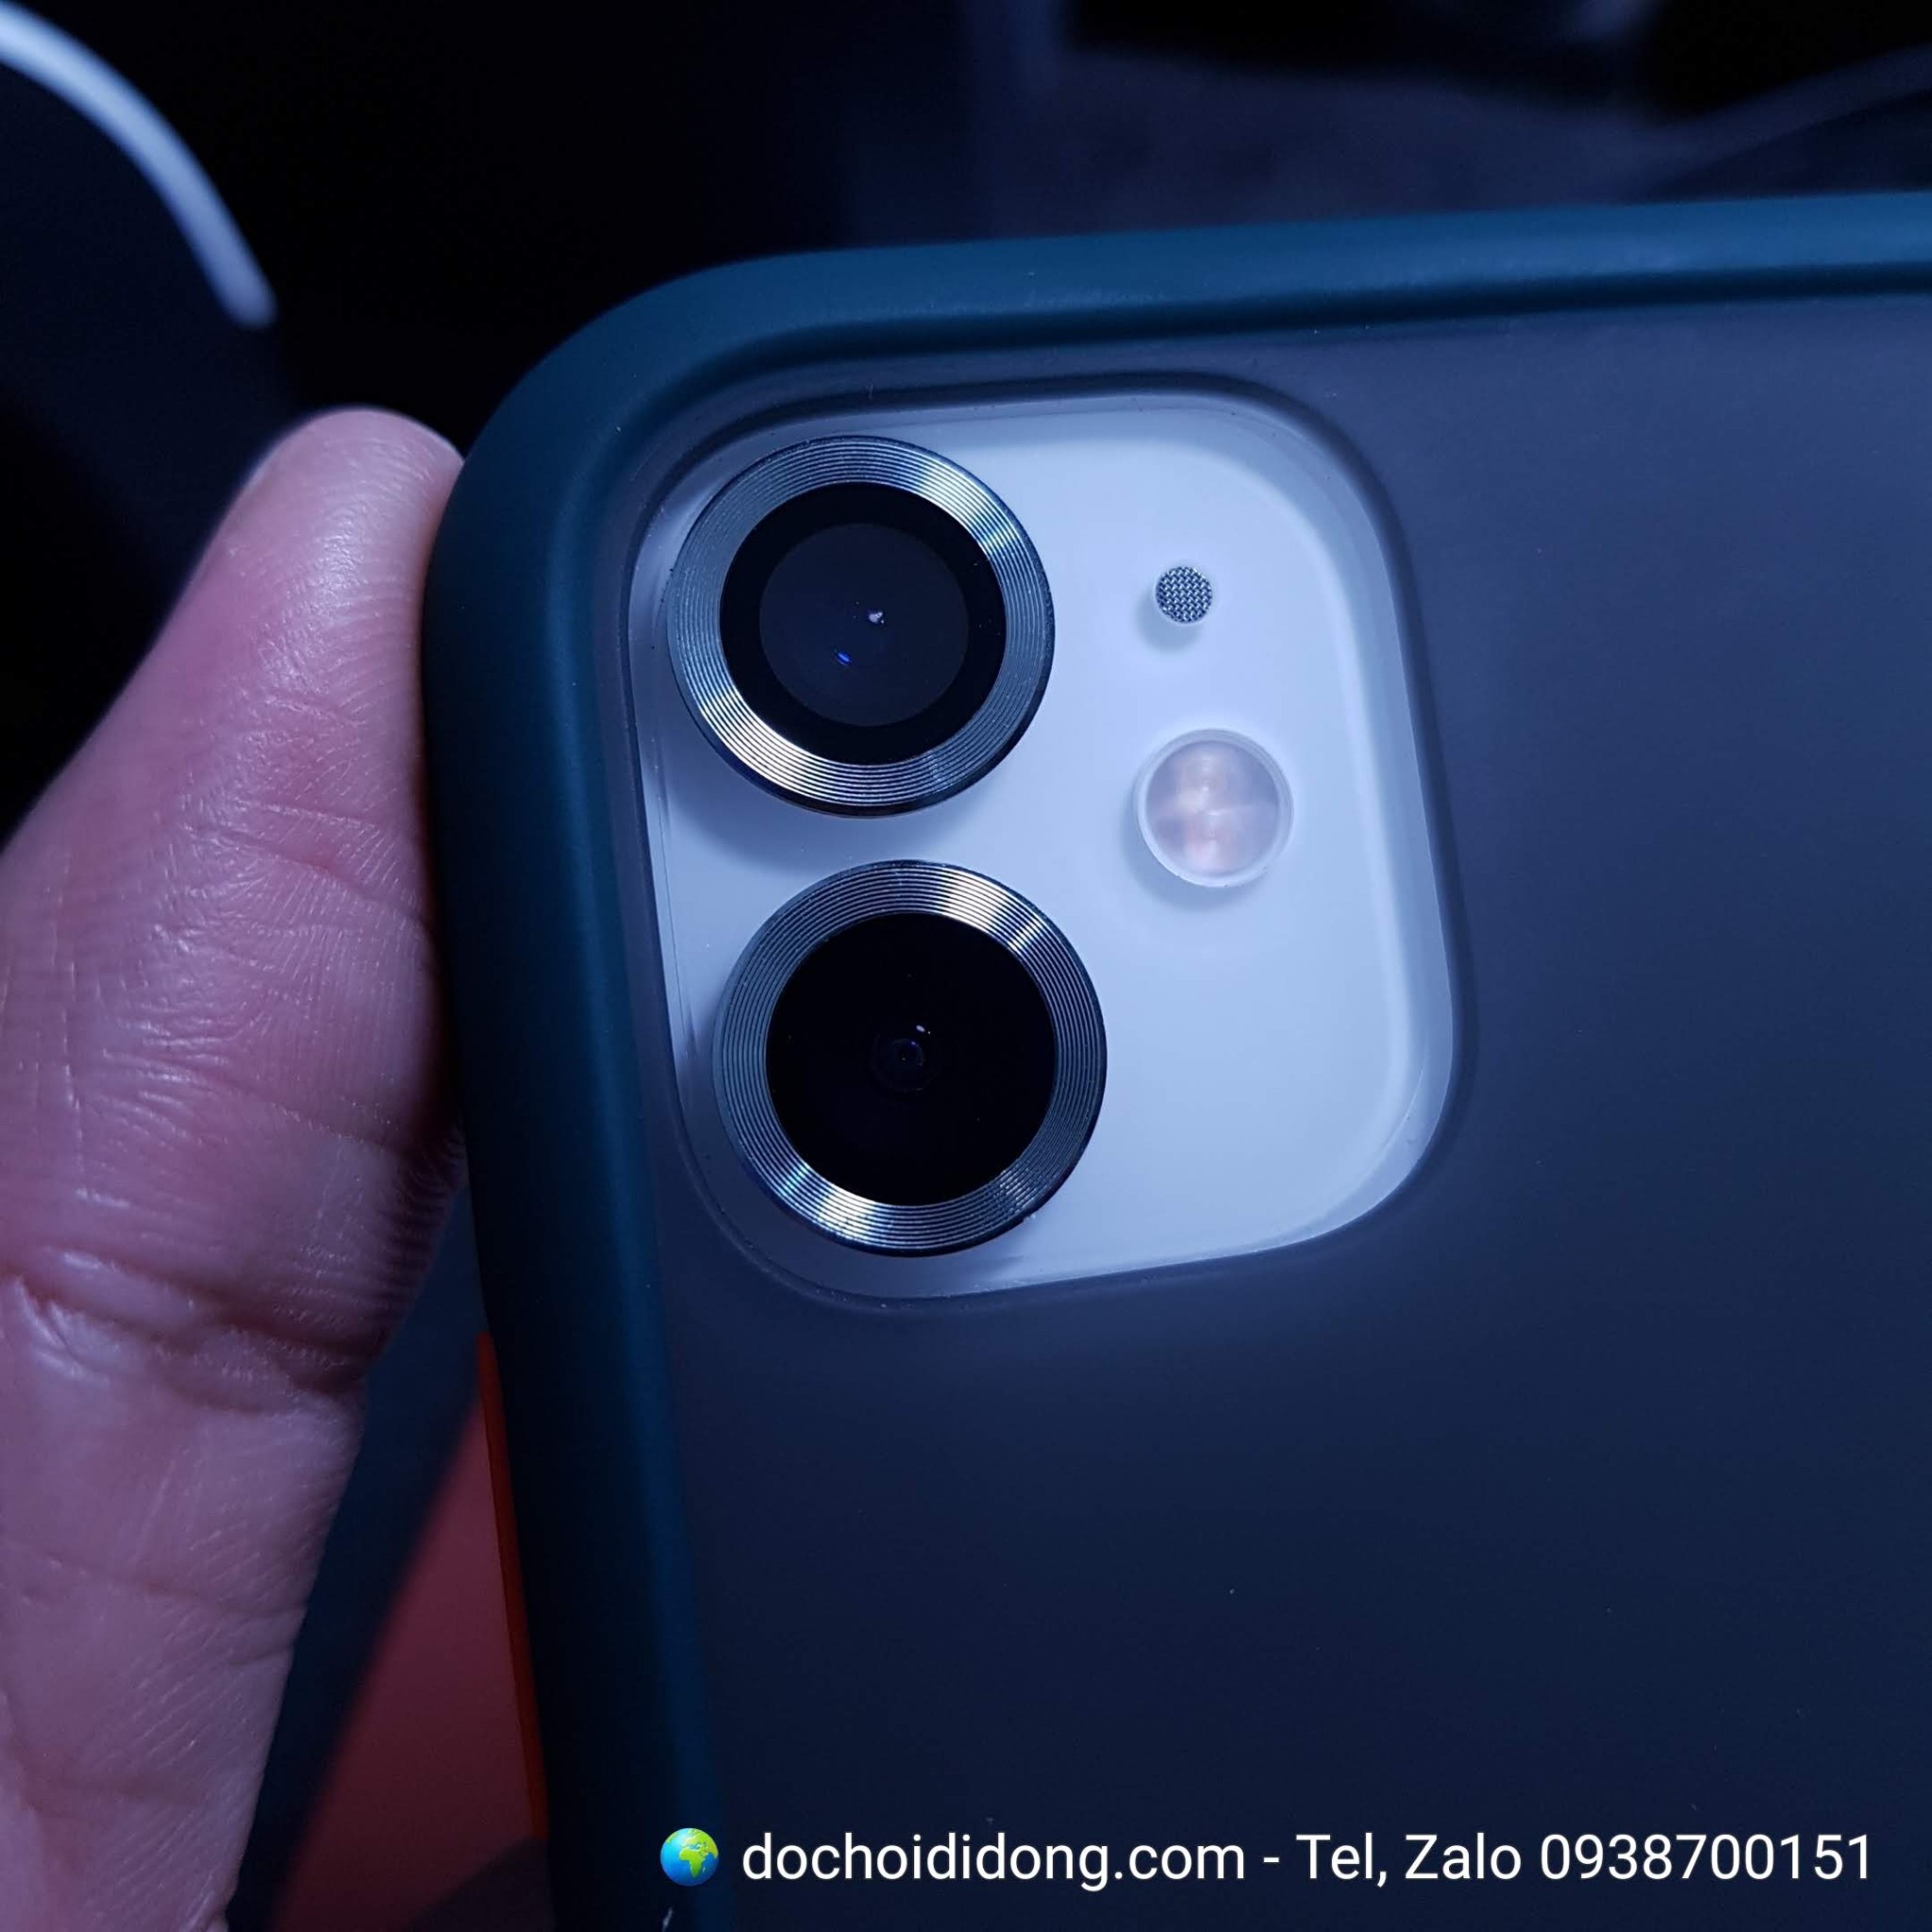 Vòng bảo vệ camera iPhone 11, Pro và Pro Max các thương hiệu